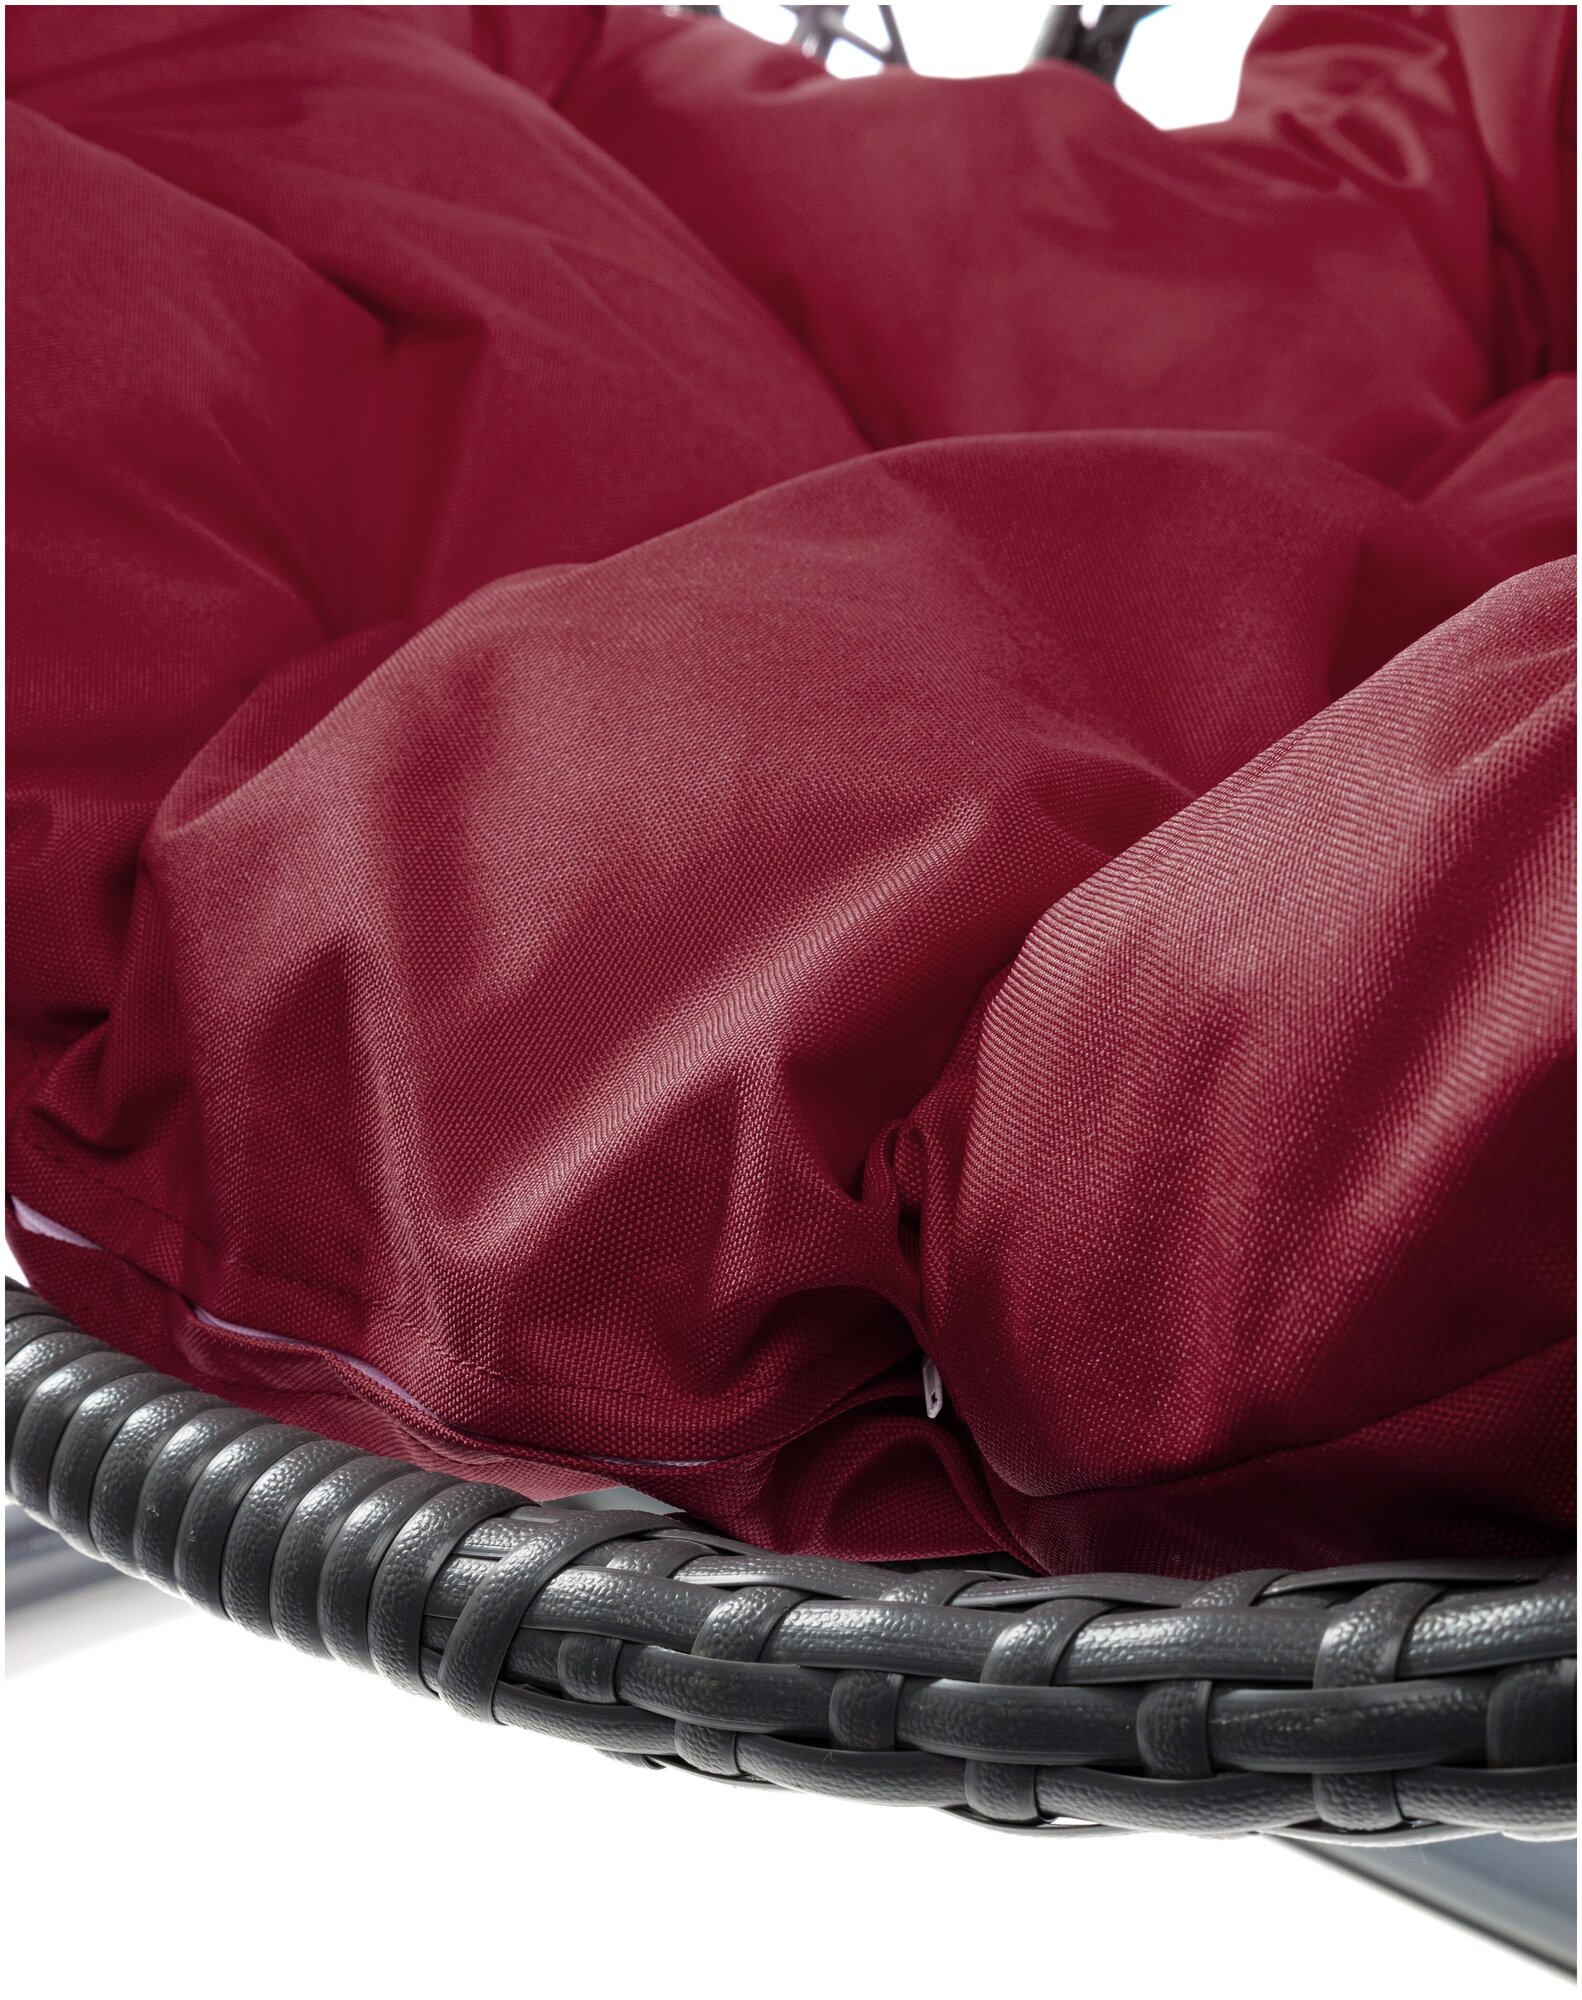 Подвесное кресло M-Group капля Люкс чёрное, бордовая подушка - фотография № 9